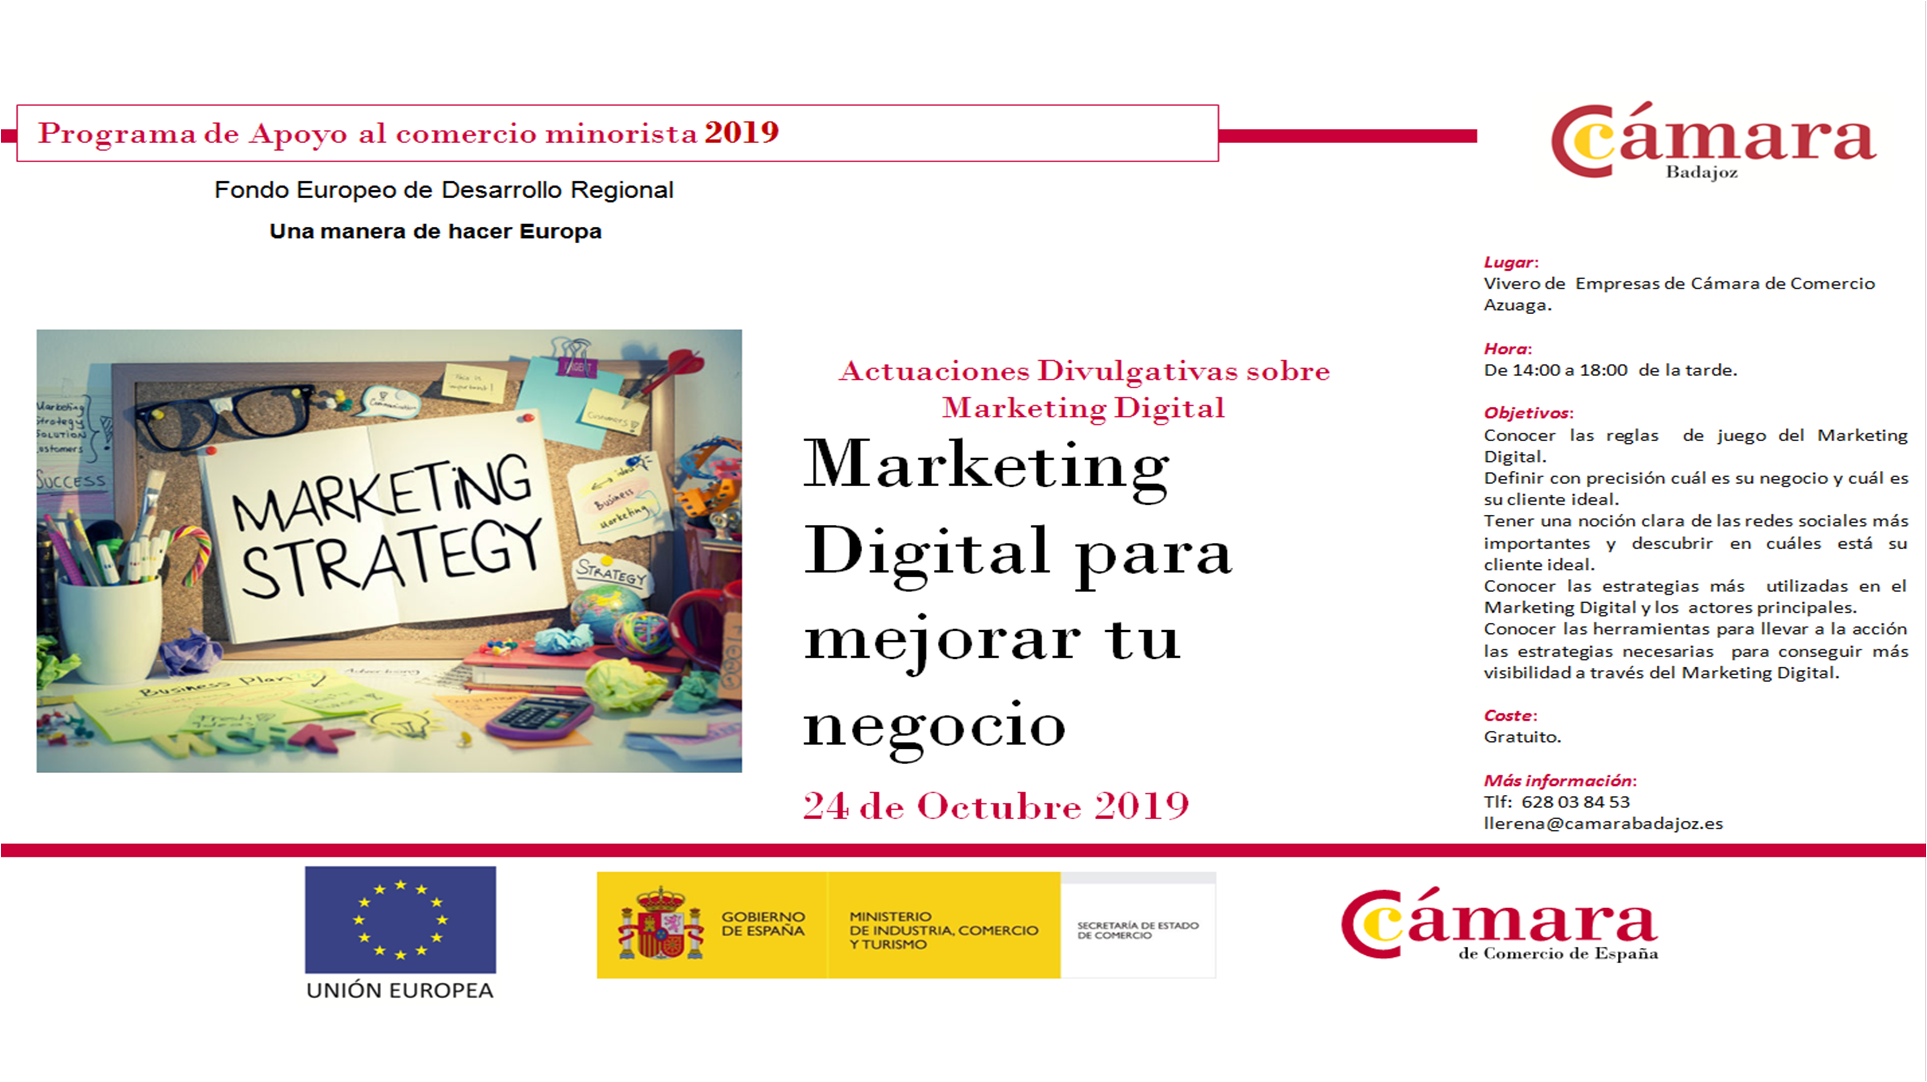 Marketing Digital para mejorar tu negocio - Programa de Apoyo al Comercio Minorista 2019- Azuaga